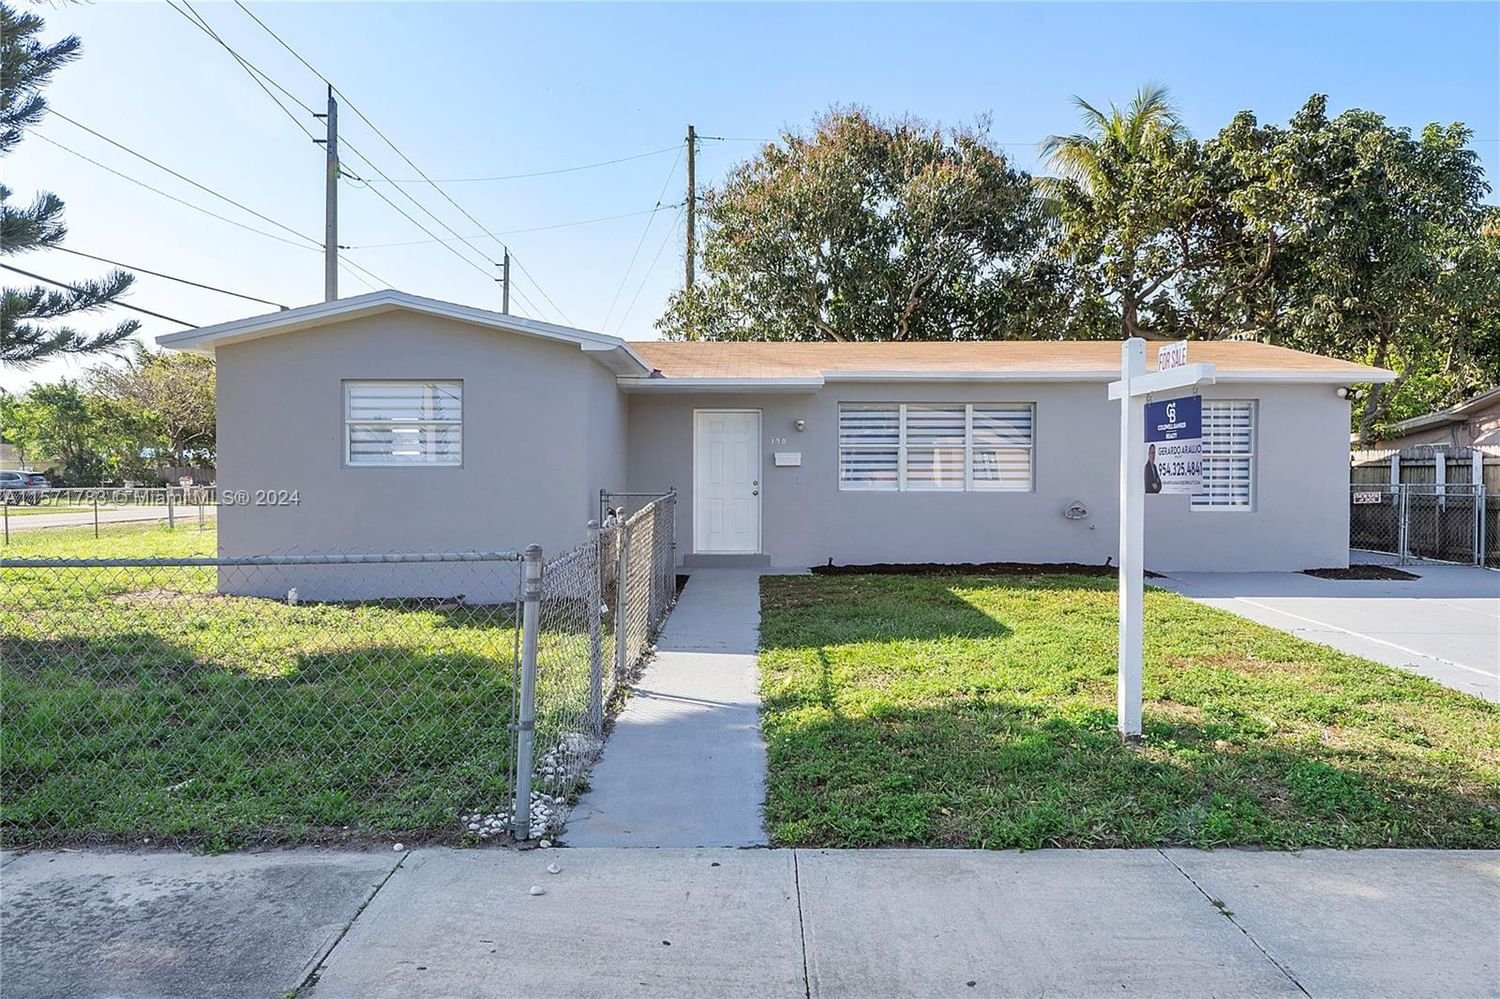 Real estate property located at 190 173rd St, Miami-Dade County, CON-GIA MNR, North Miami Beach, FL